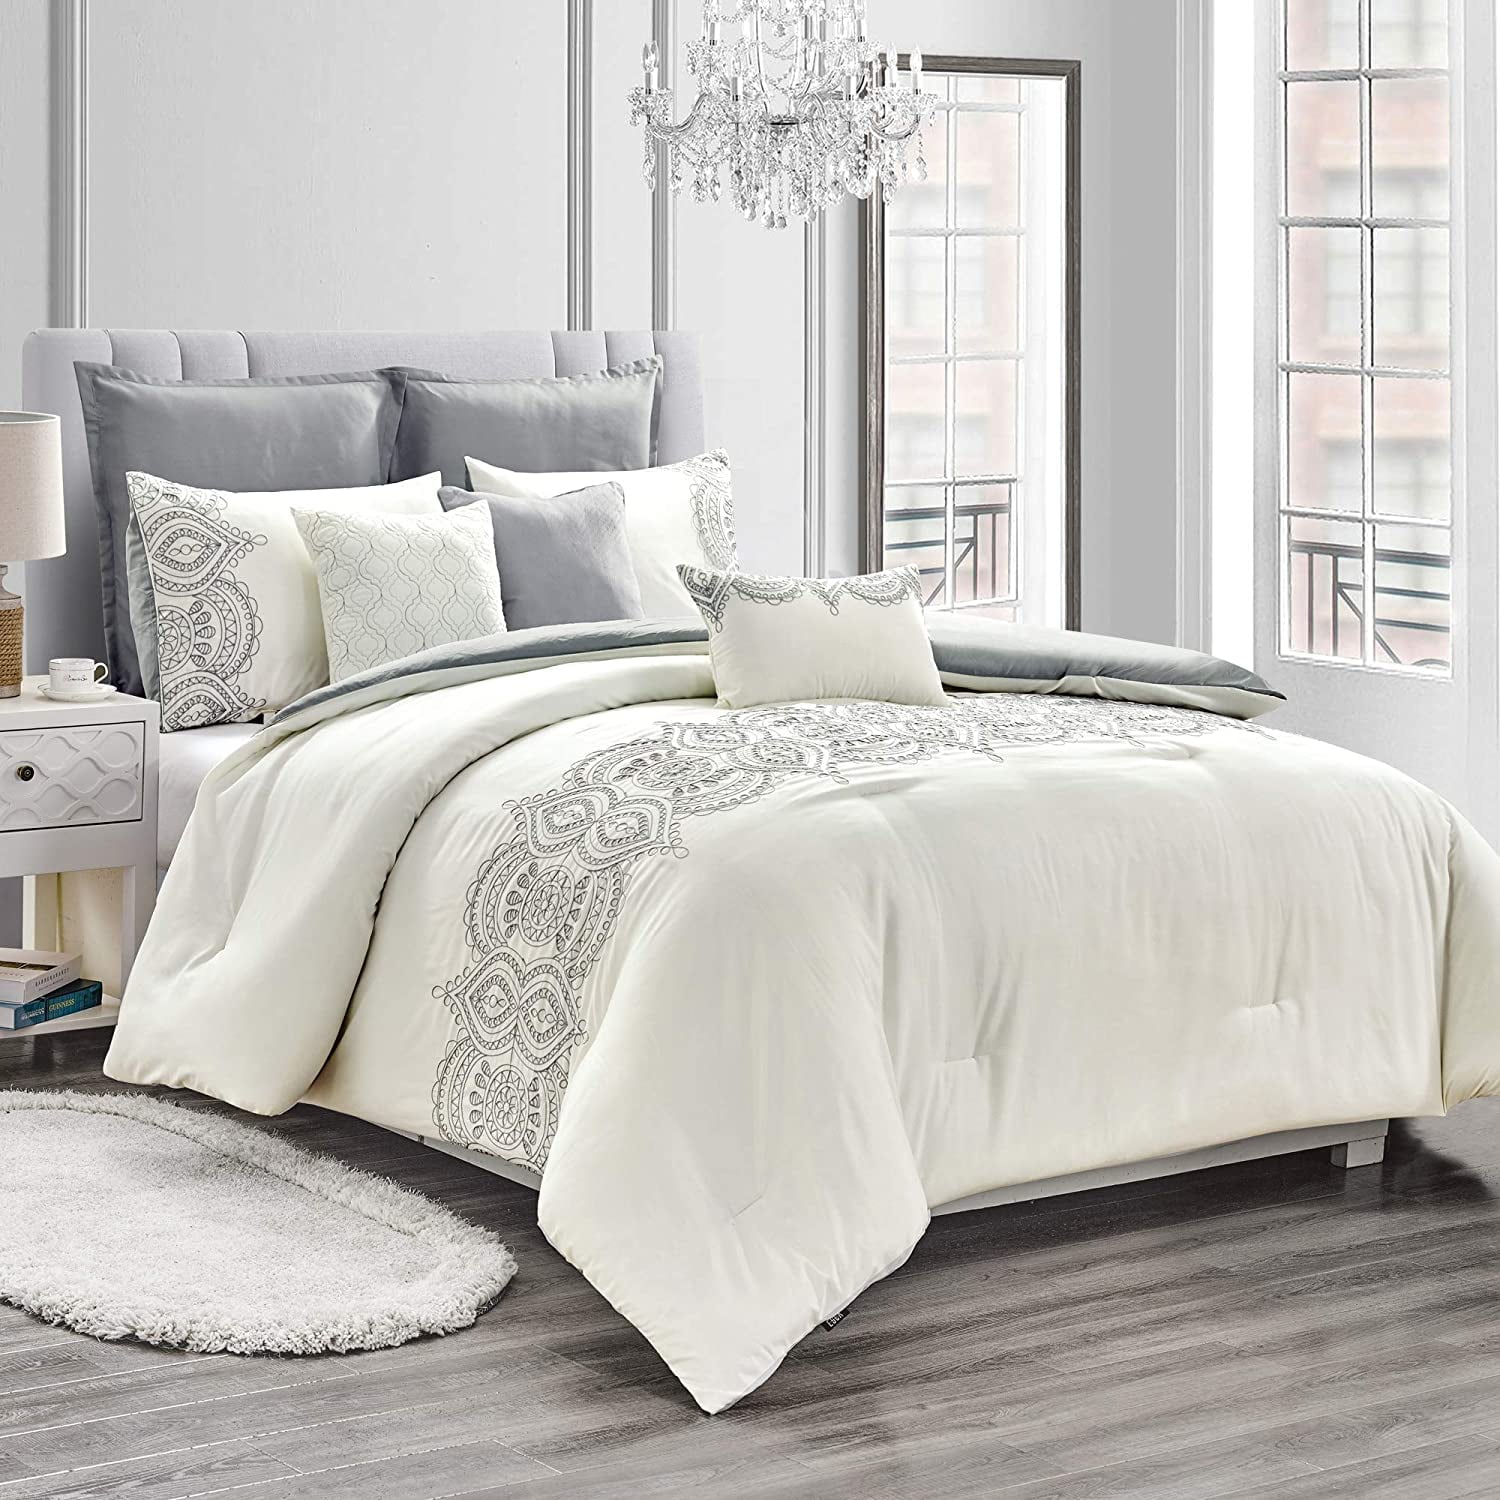 HGMart Bedding Comforter Set Bed In A Bag - 8 Piece Luxury Microfiber ...